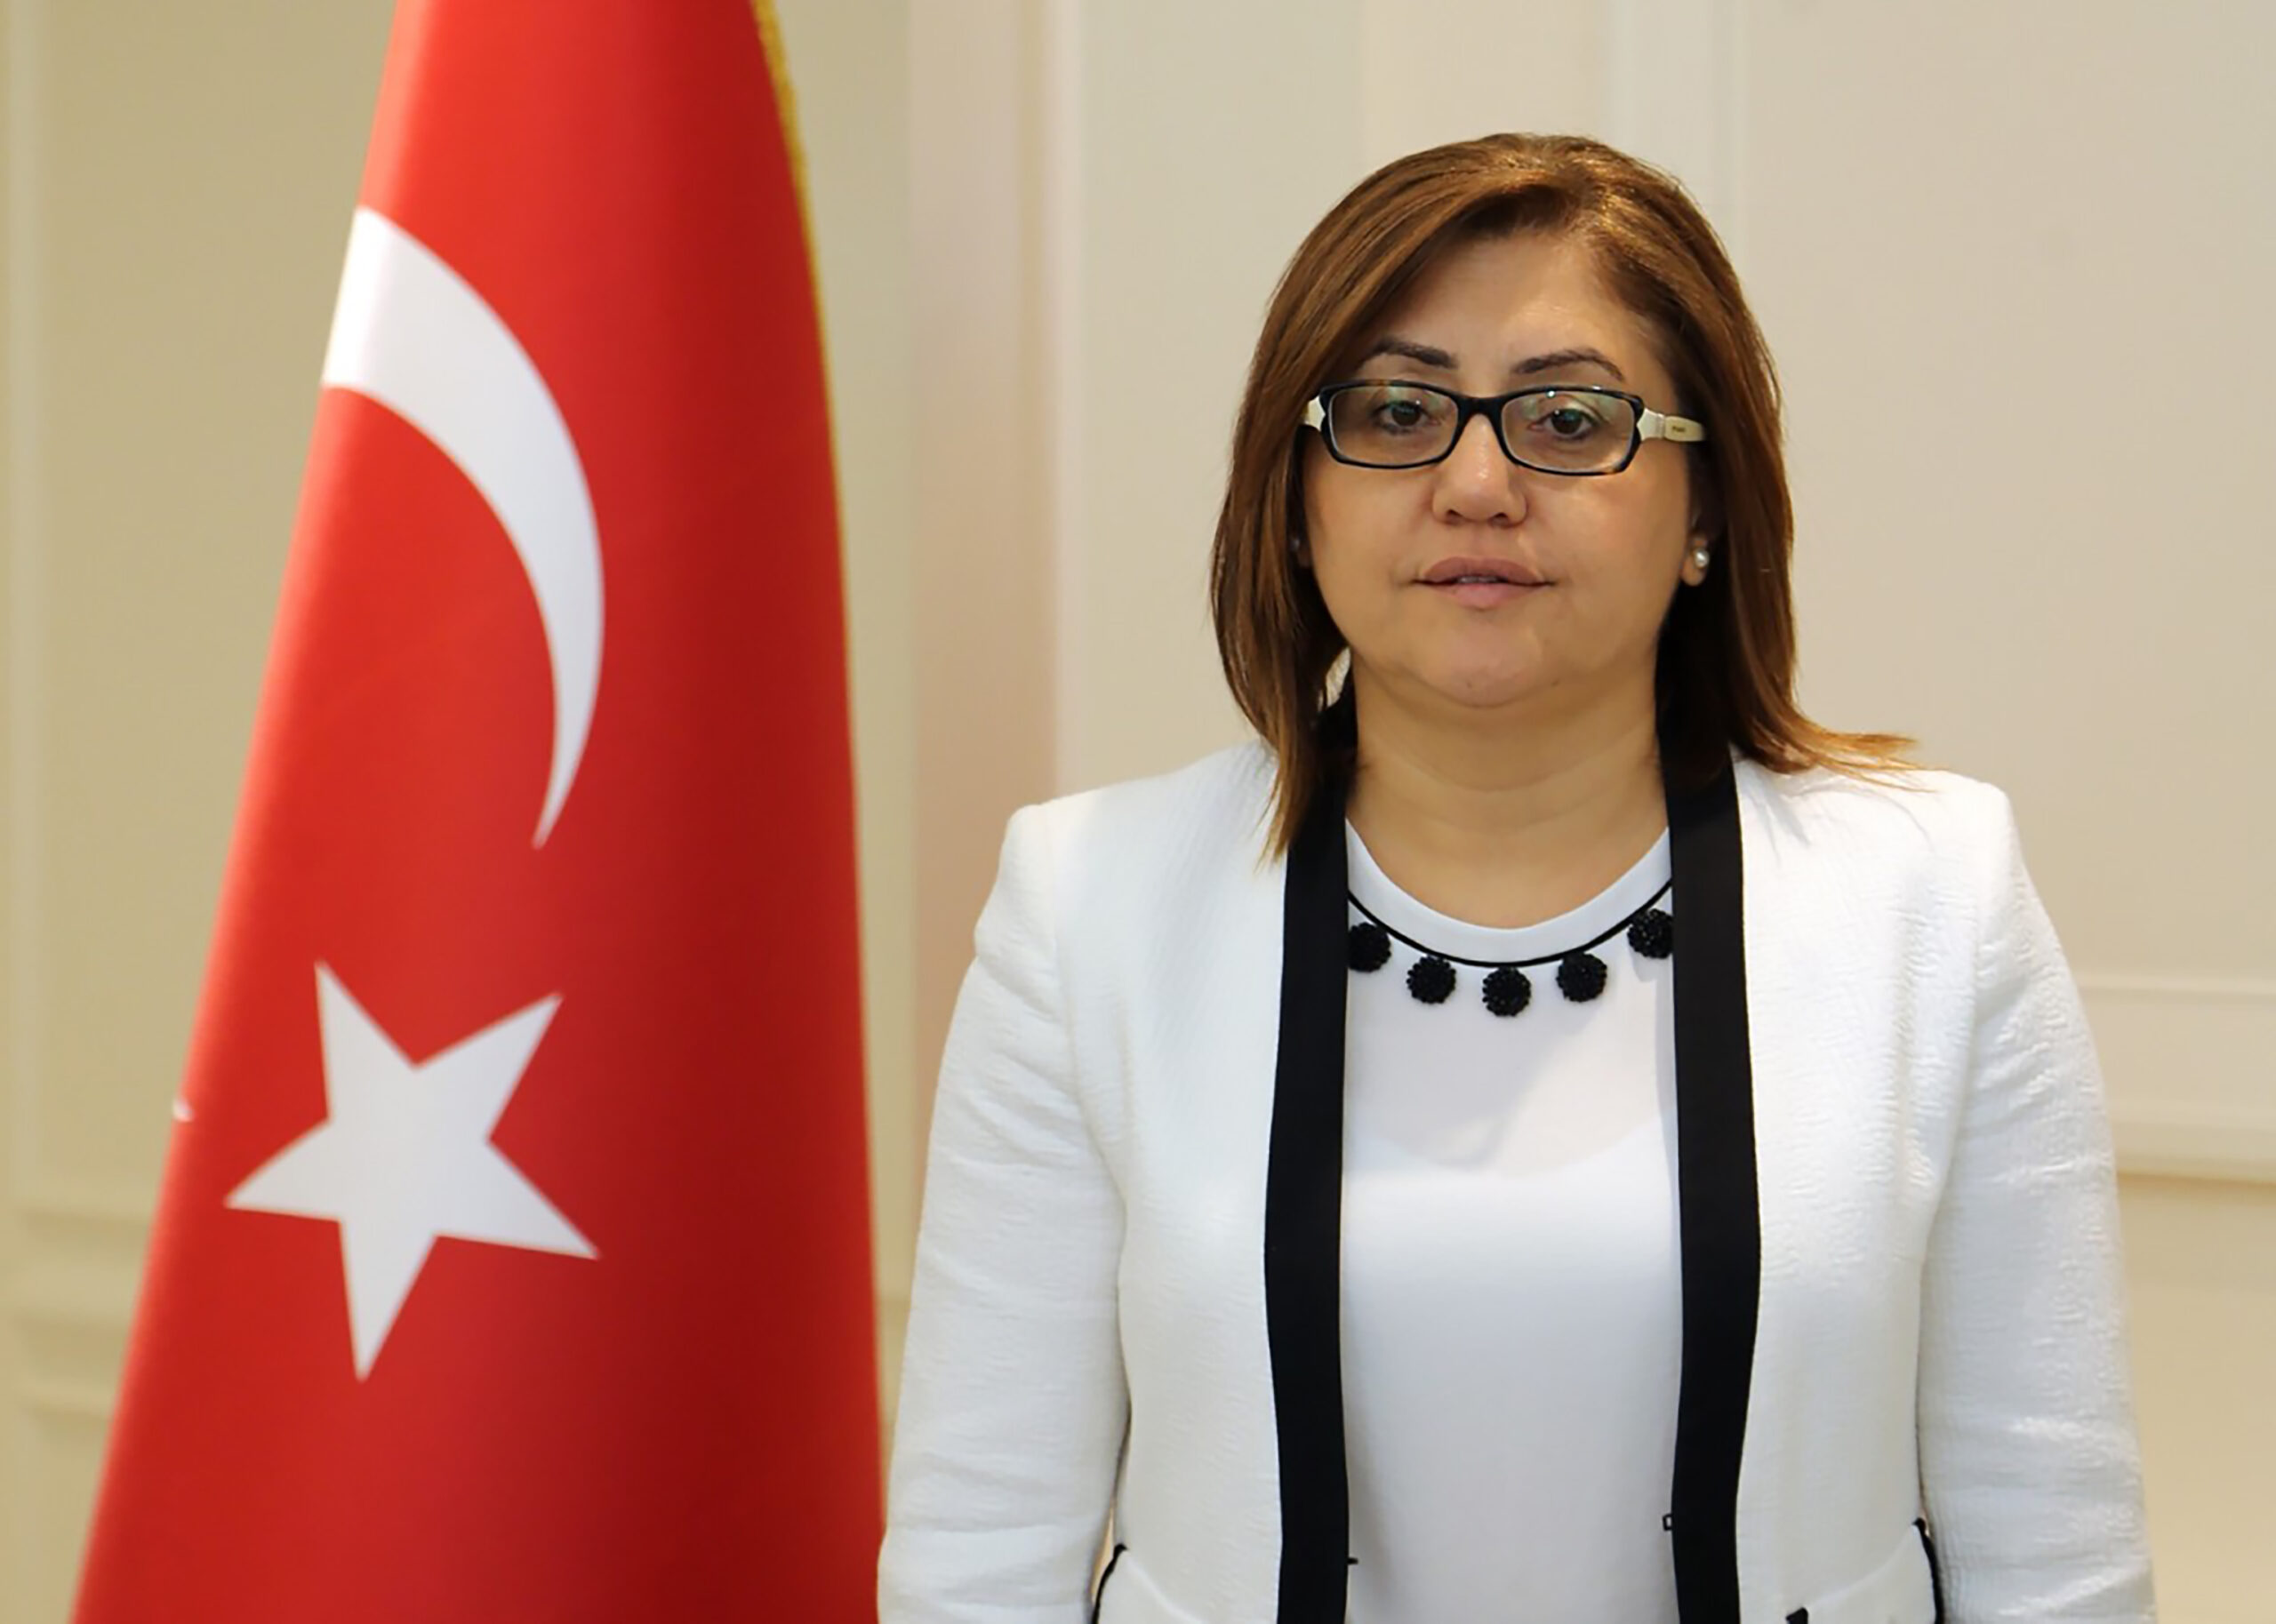 Başkan Fatma Şahin: “Atatürk’ün Mirasına Sahip Çıkmak Hepimizin Görevidir”